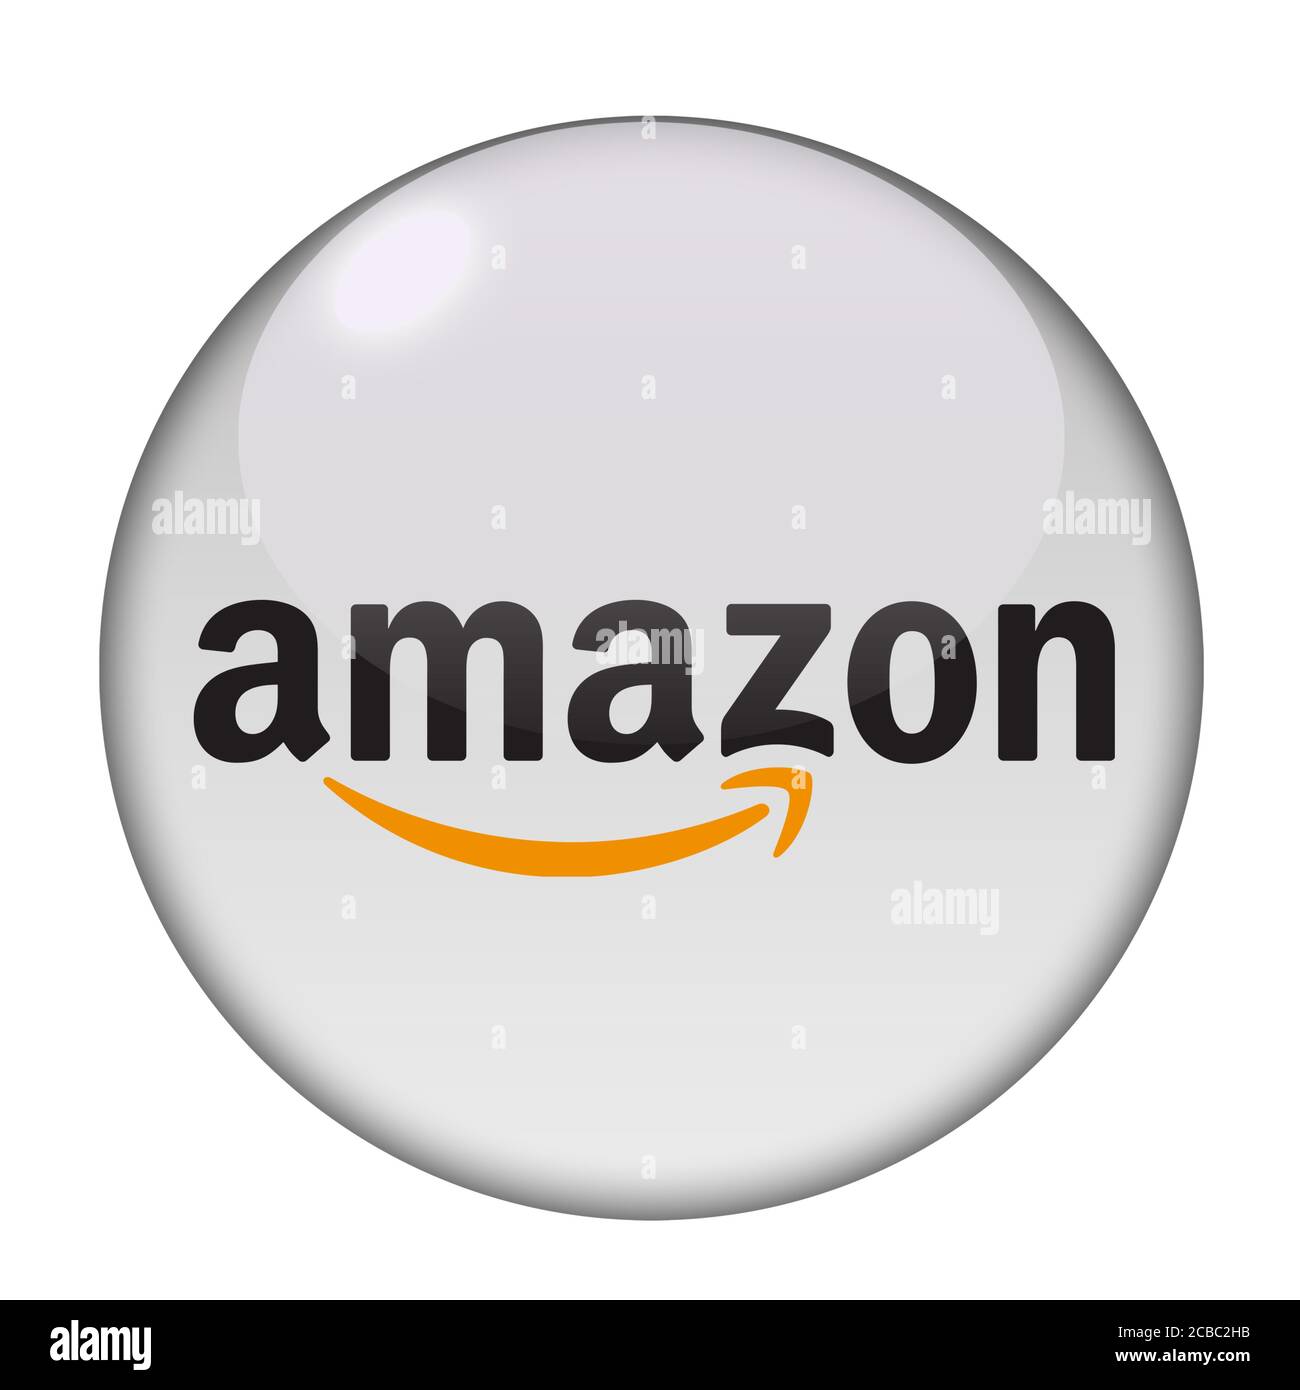 Amazon company logo Stock Photo